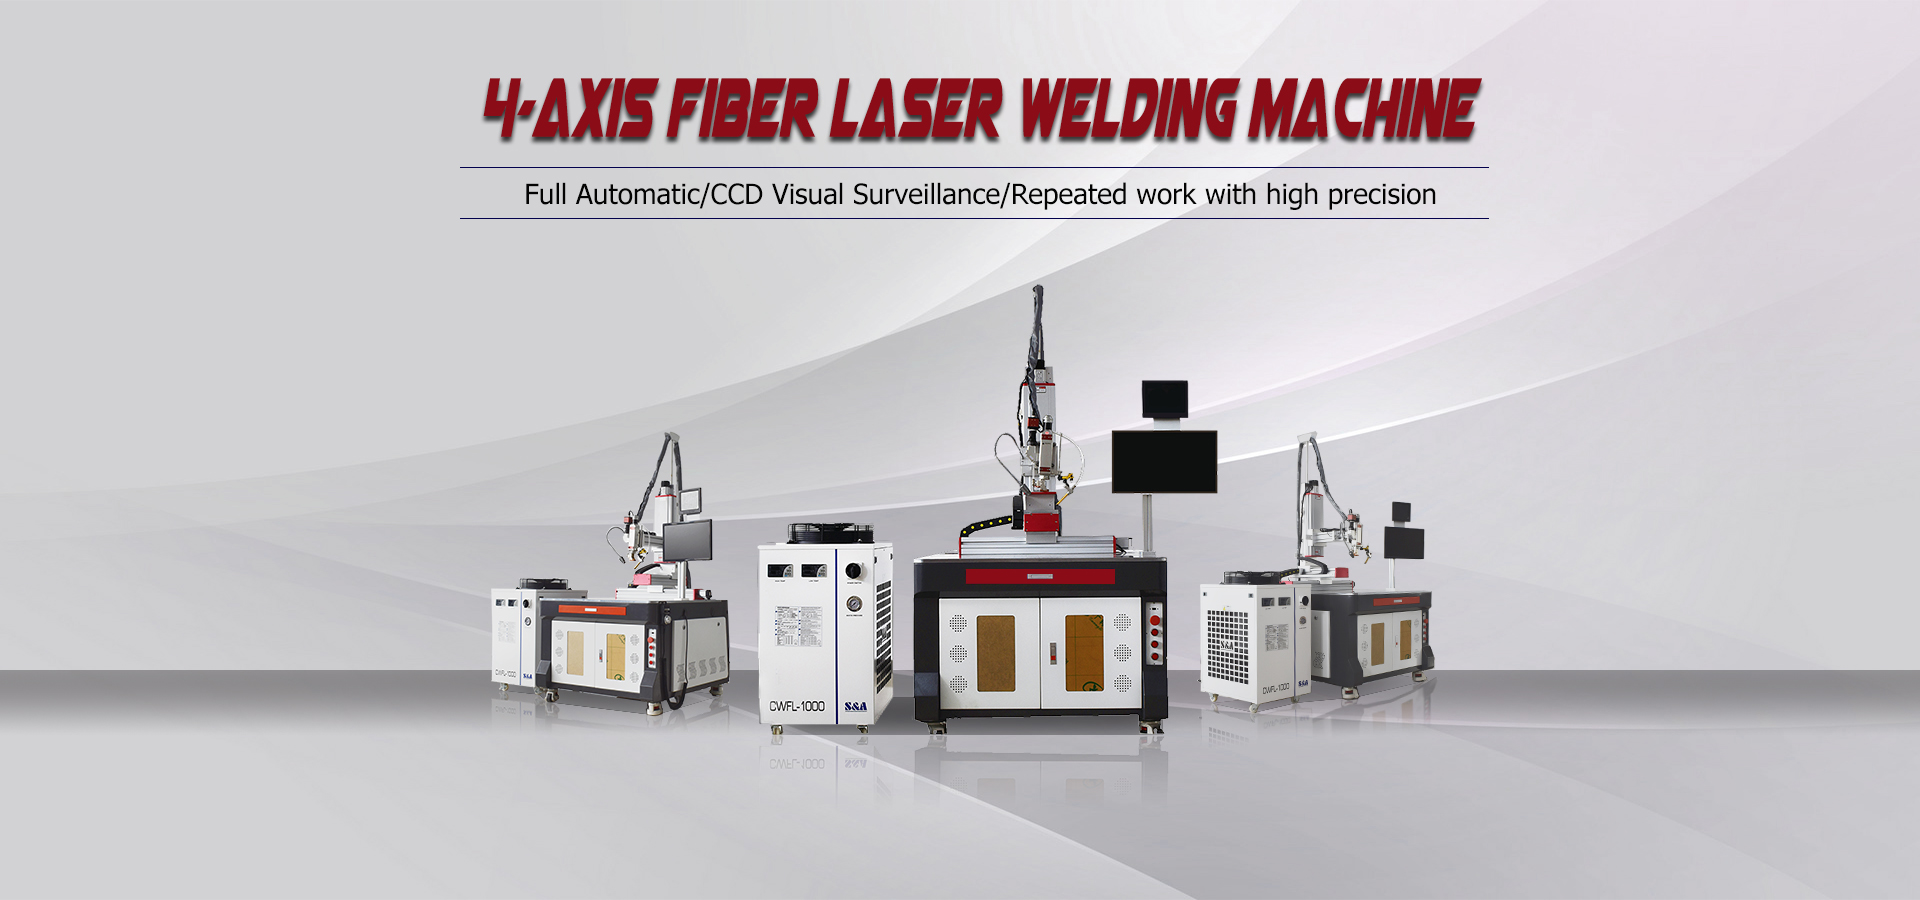 4-Axis Fiber Laser Welding Machine